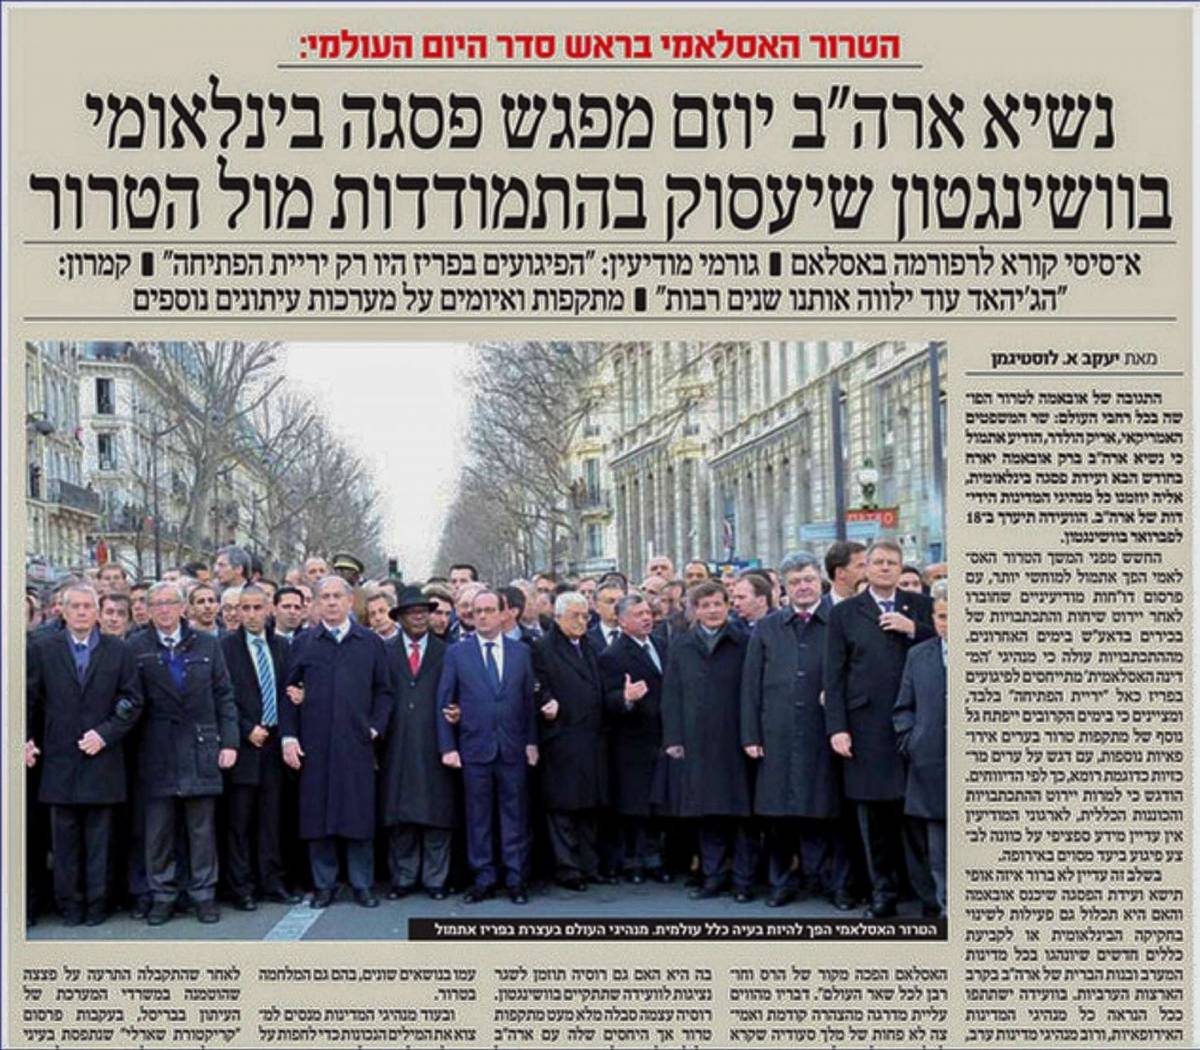 Giornale ebraico ultra-ortodosso "cancella" le donne dalla marcia di Parigi